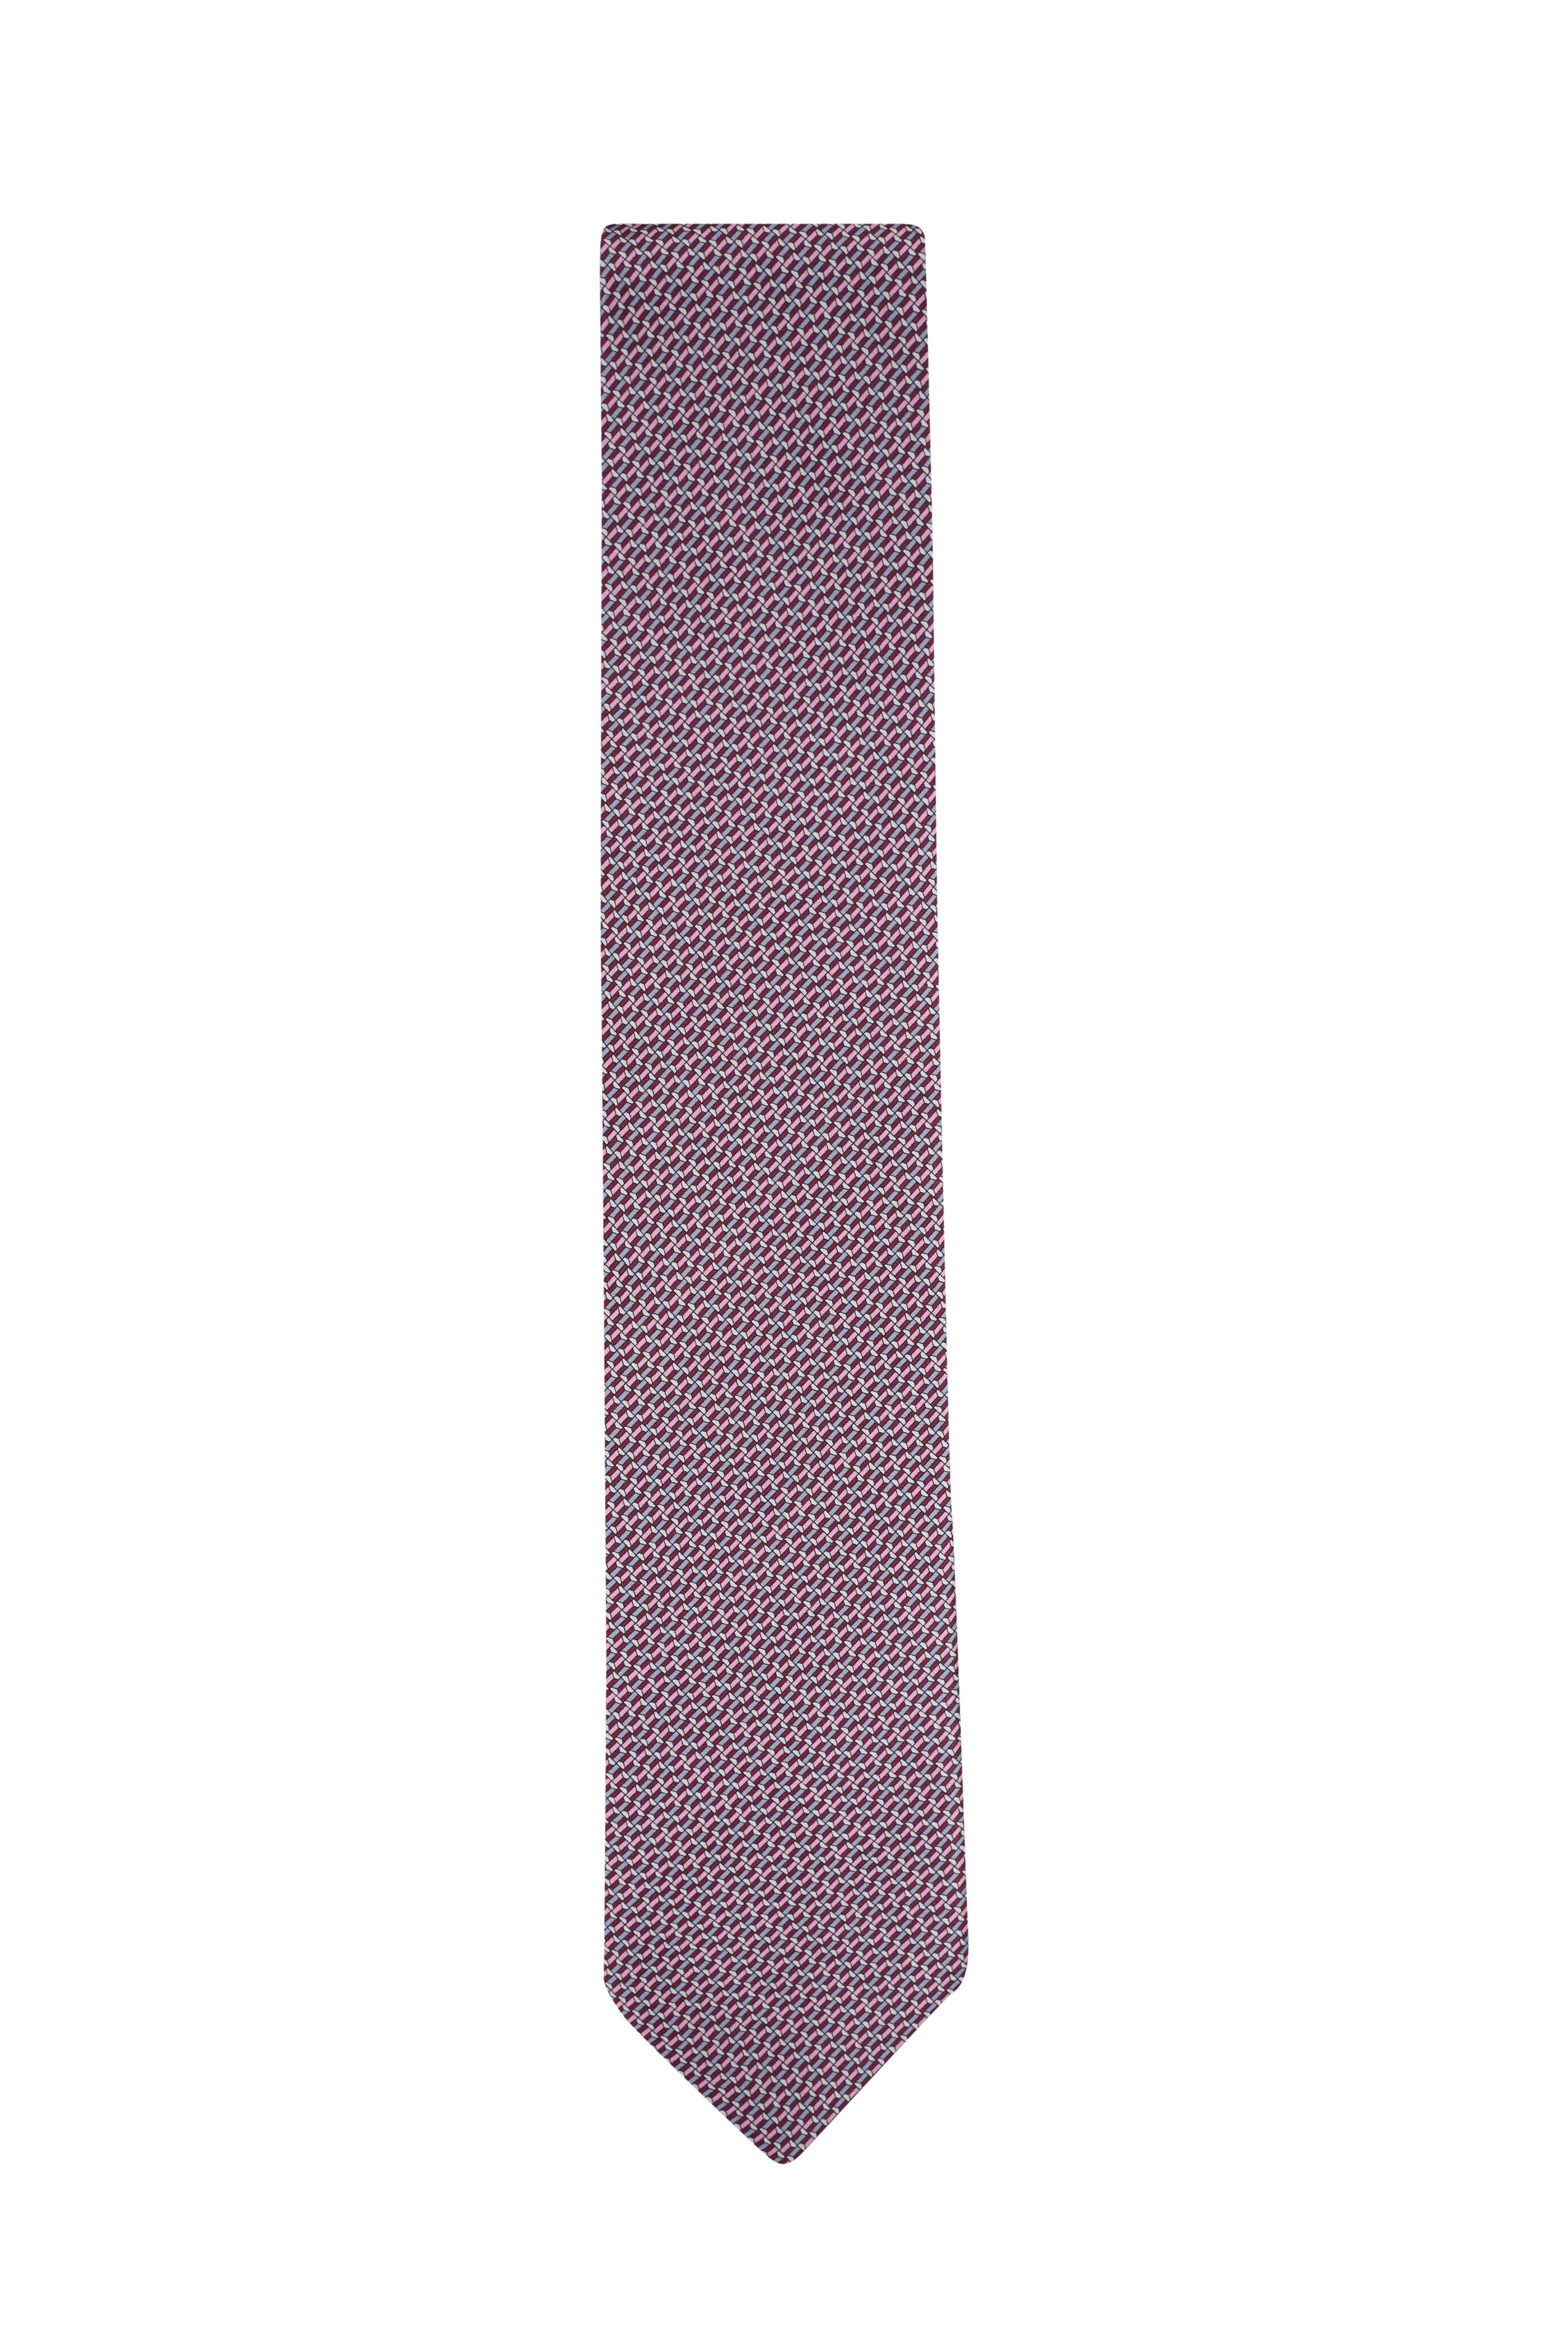 Brioni - Pink Geometric Print Silk Necktie | Mitchell Stores